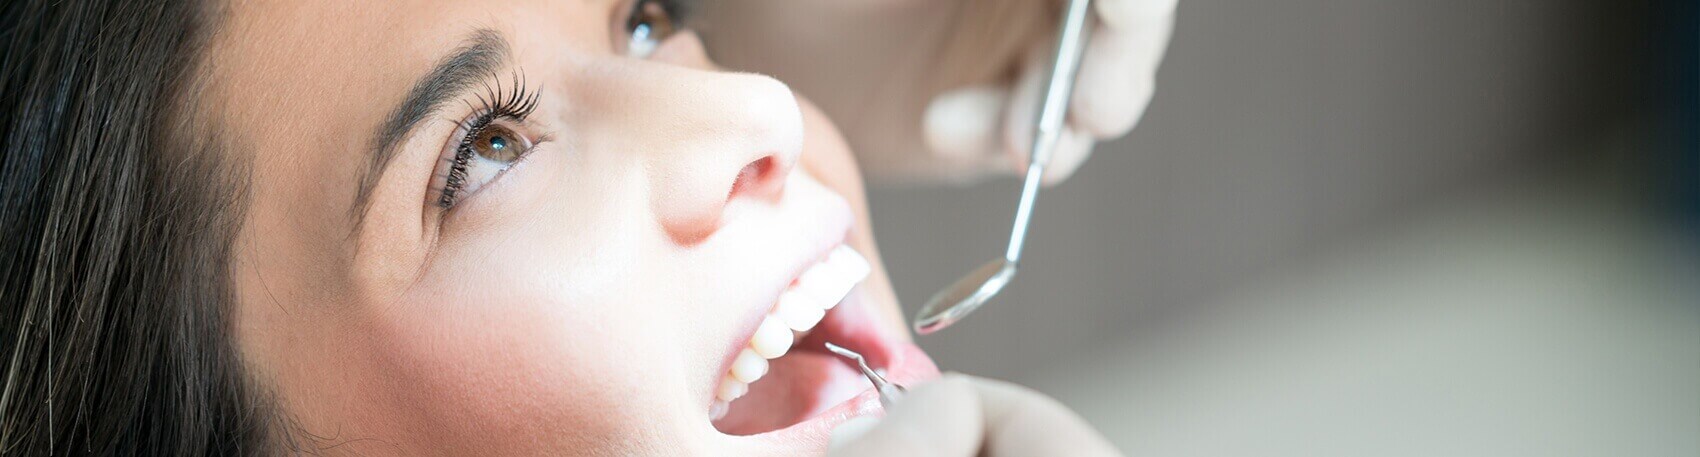 girl having her teeth examined